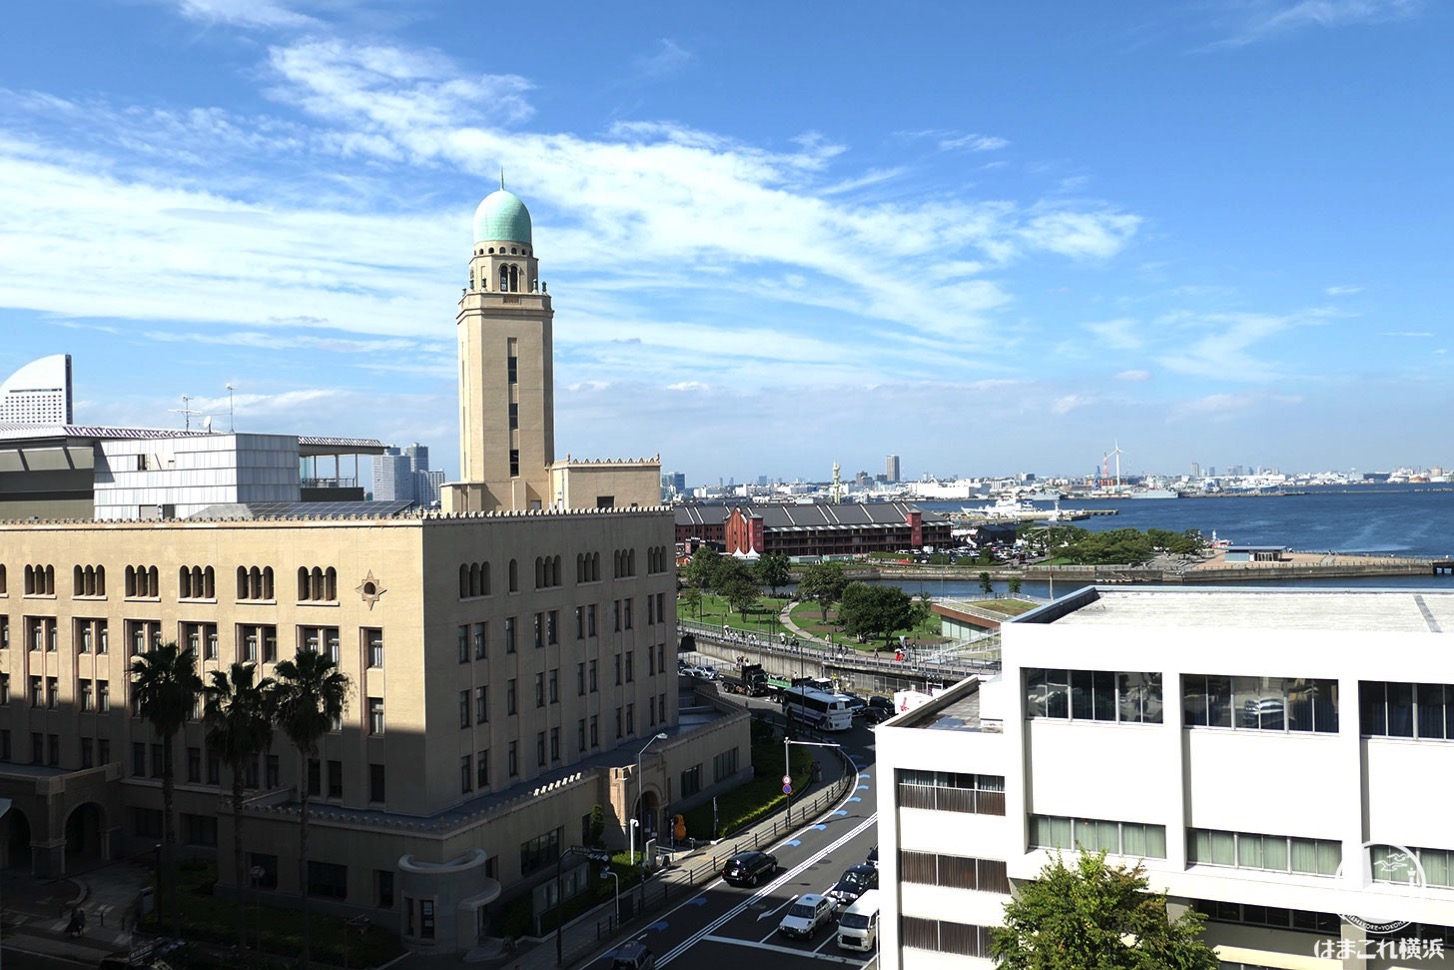 神奈川県庁本庁舎公開 屋上から見た横浜税関（クイーン）